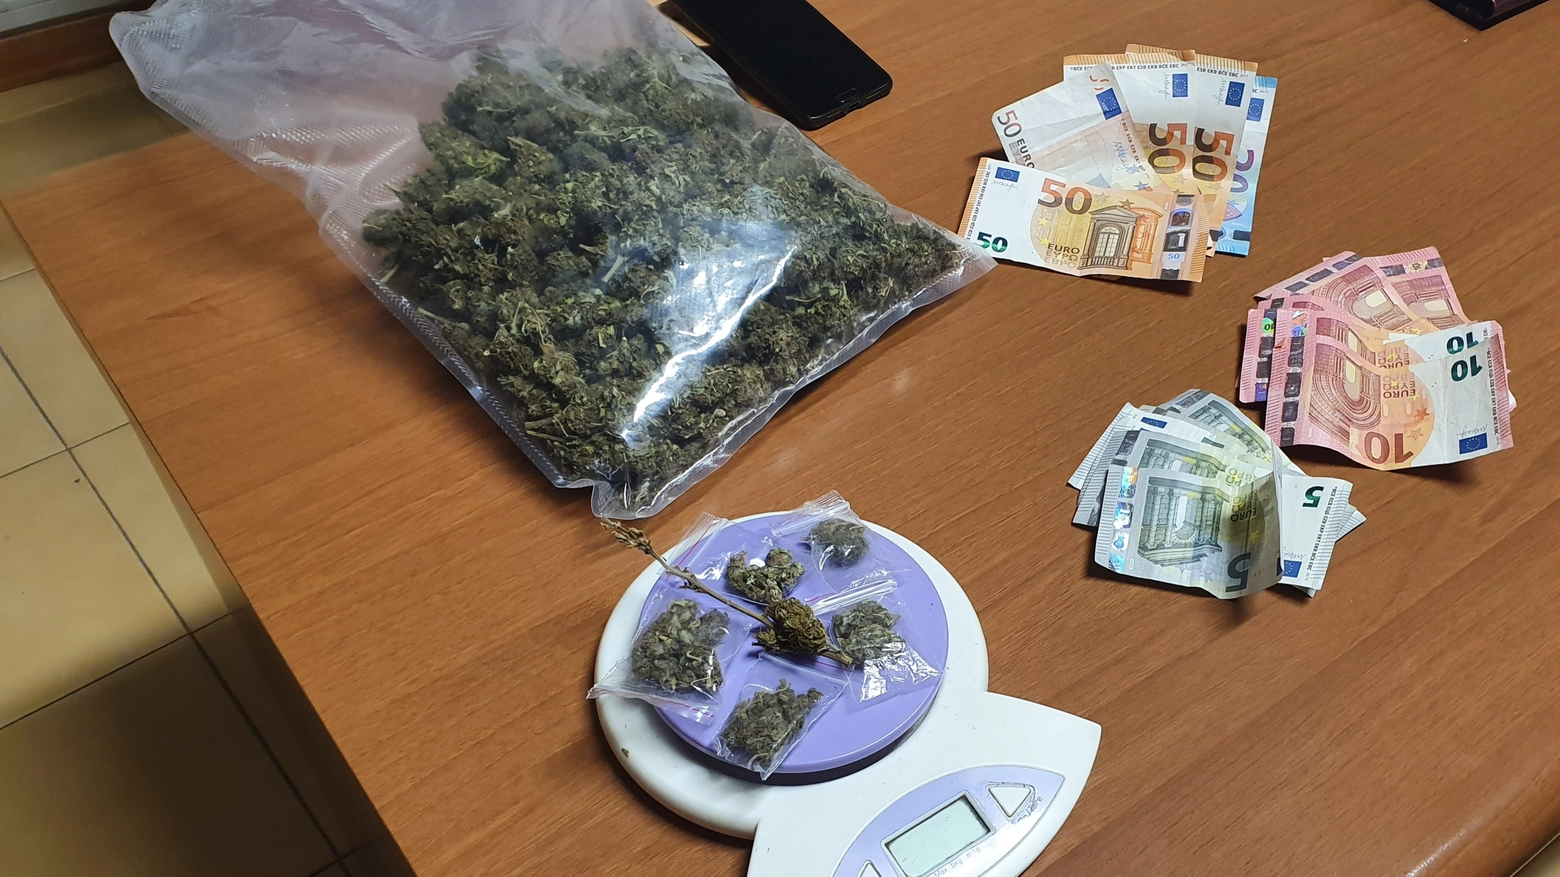 La Finanza ha sequestrato 273 grammi di Marijuana